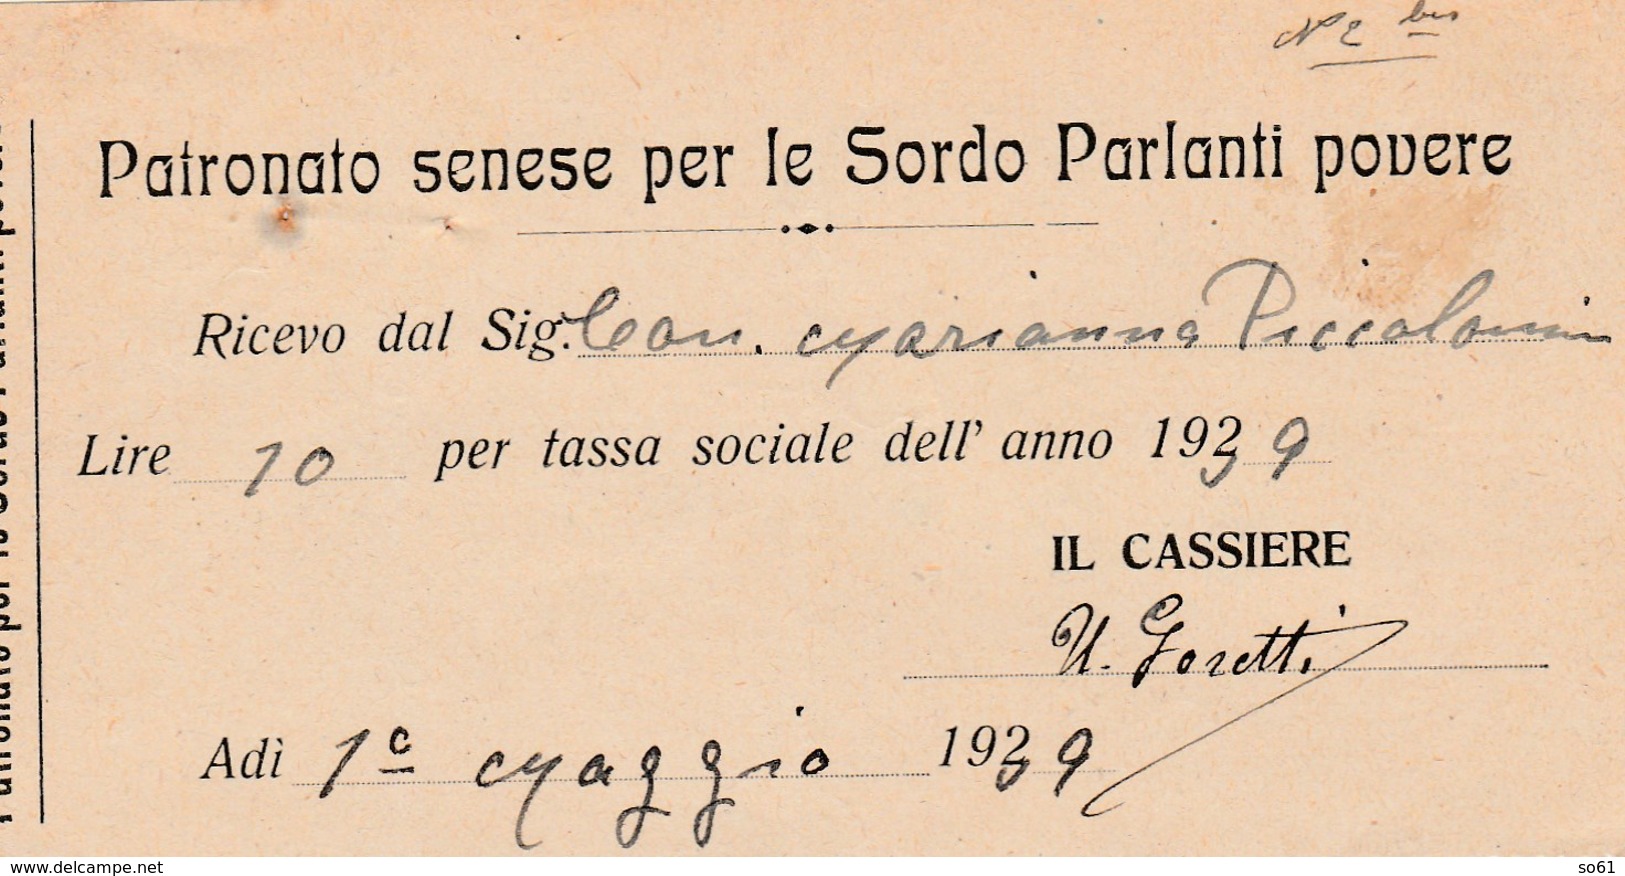 7628.   Patronato Senese Per Le Sordo Parlanti Povere Siena Fattura Contessa Piccolomini 1939 - Italia